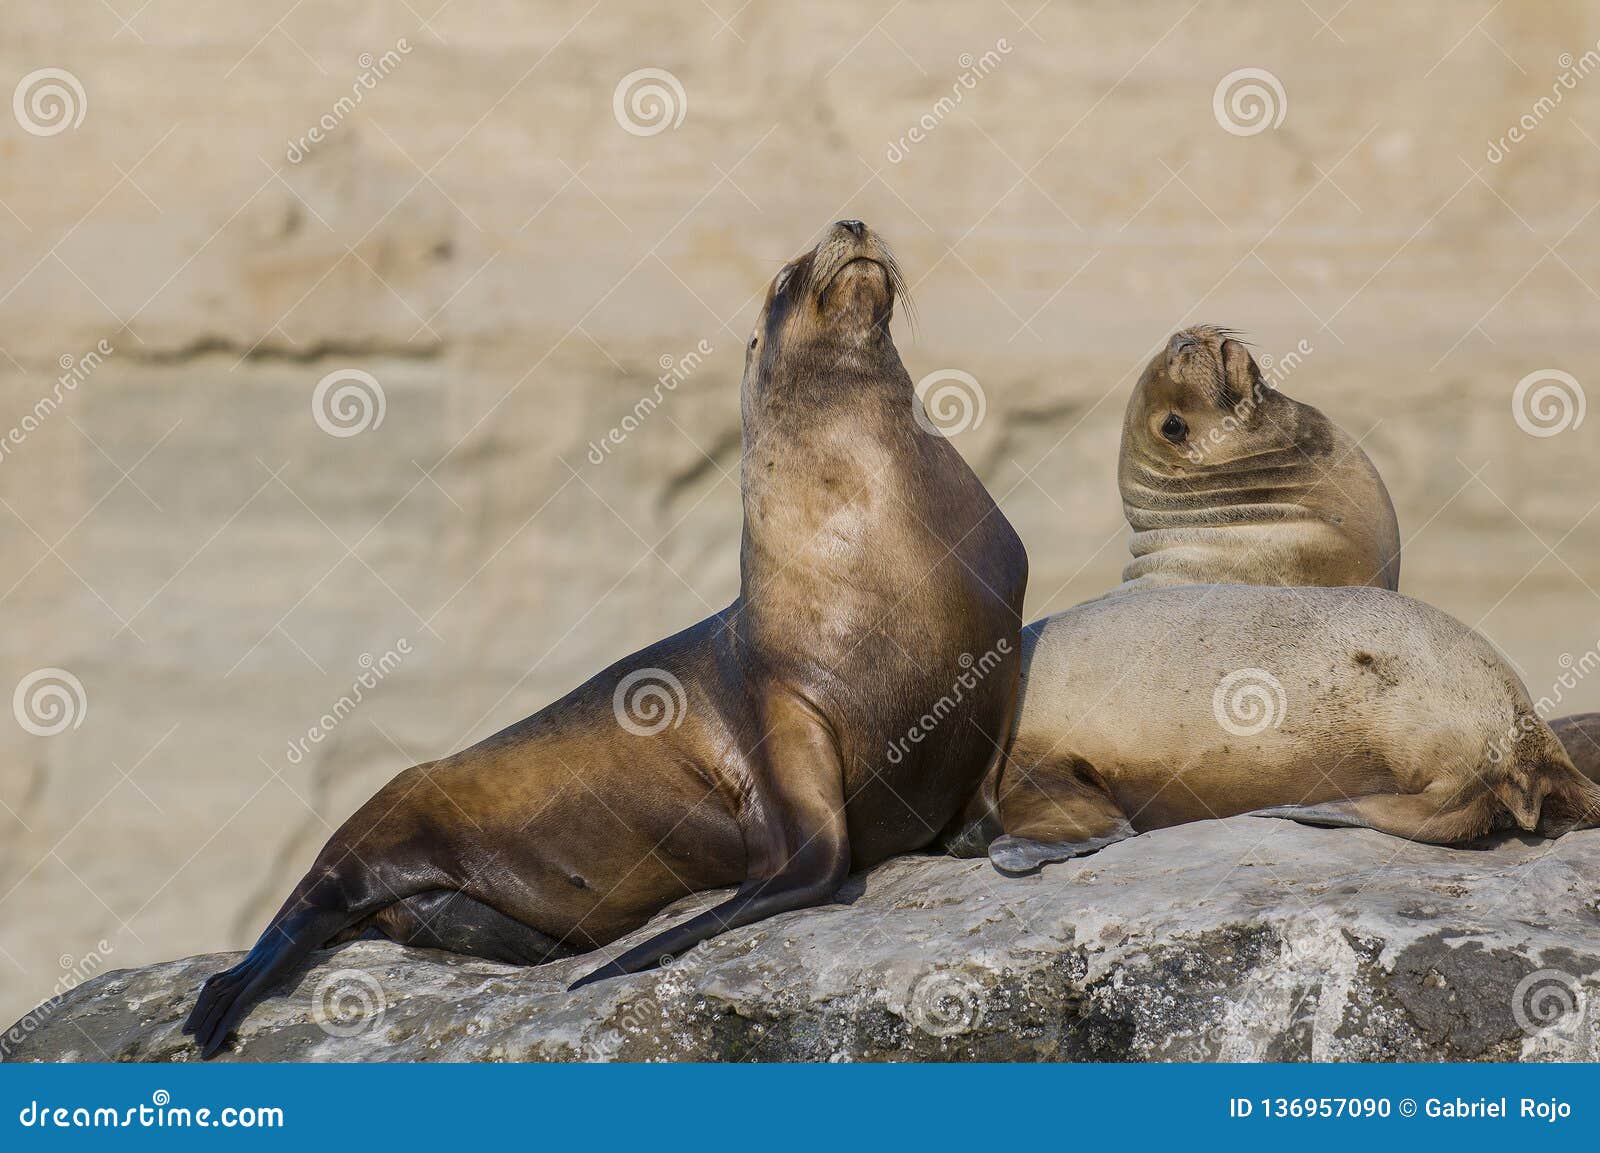 sea lion , patagonia, argentina